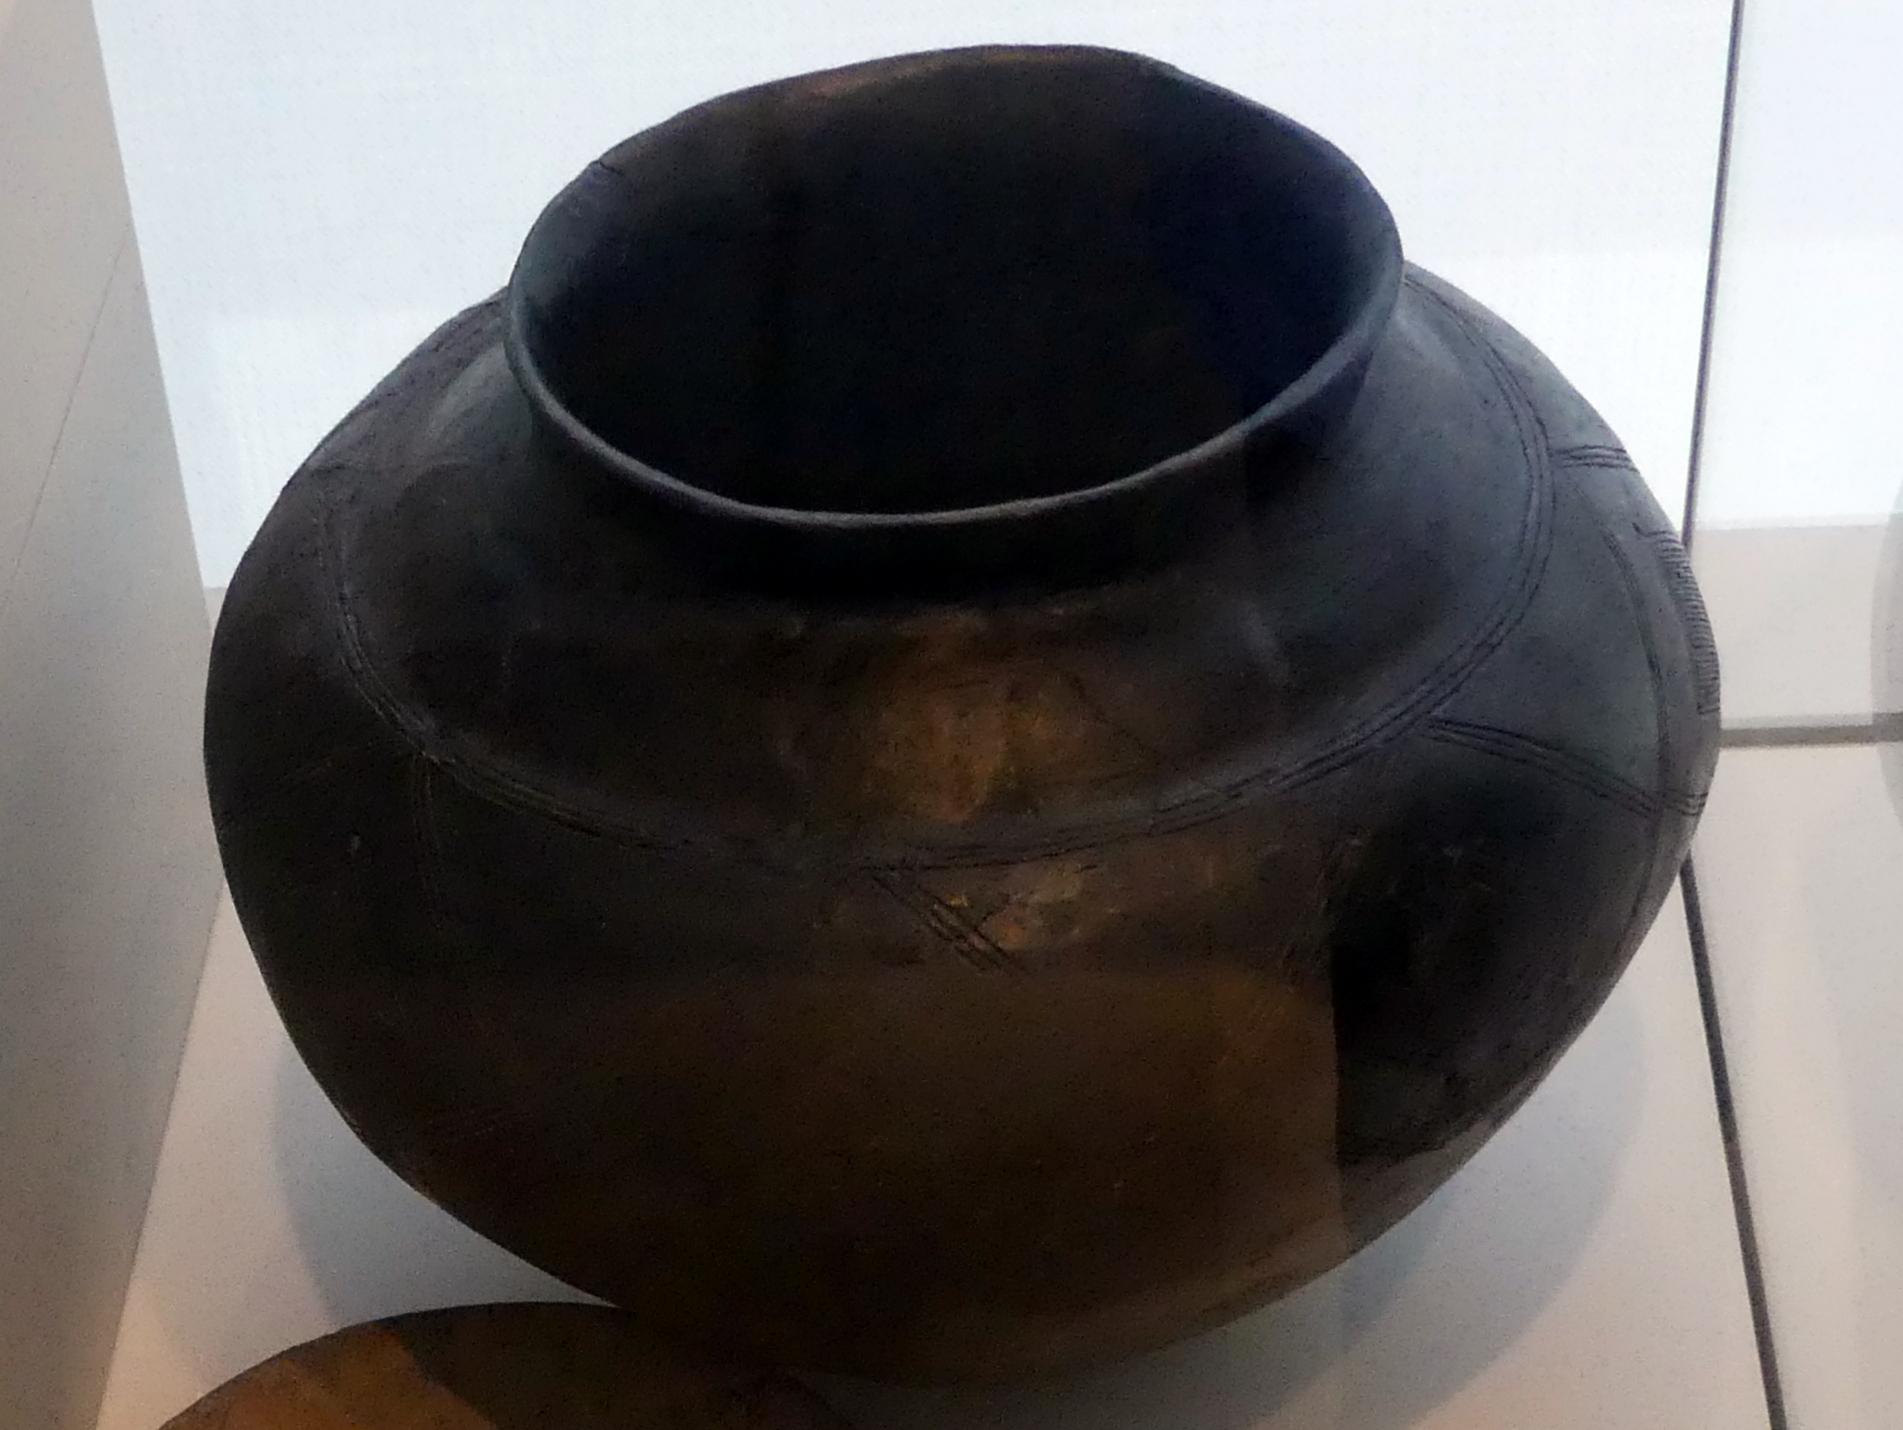 Kegelhalsgefäß, Hallstattzeit, 700 - 200 v. Chr.